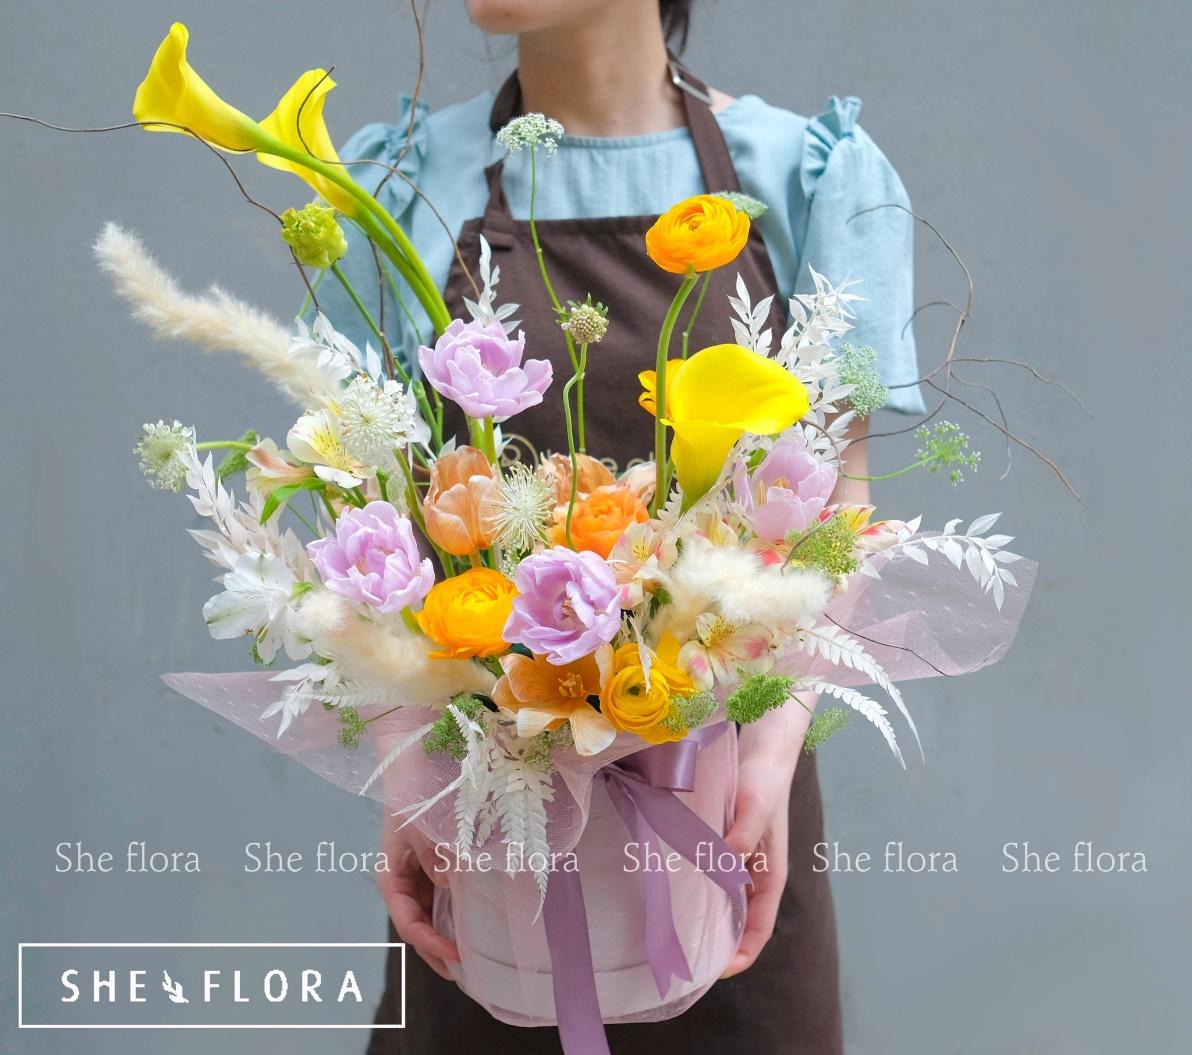 Shop hoa tươi She Floral đã ghi dấu với nhiều người yêu hoa tươi bởi sự chuyên nghiệp